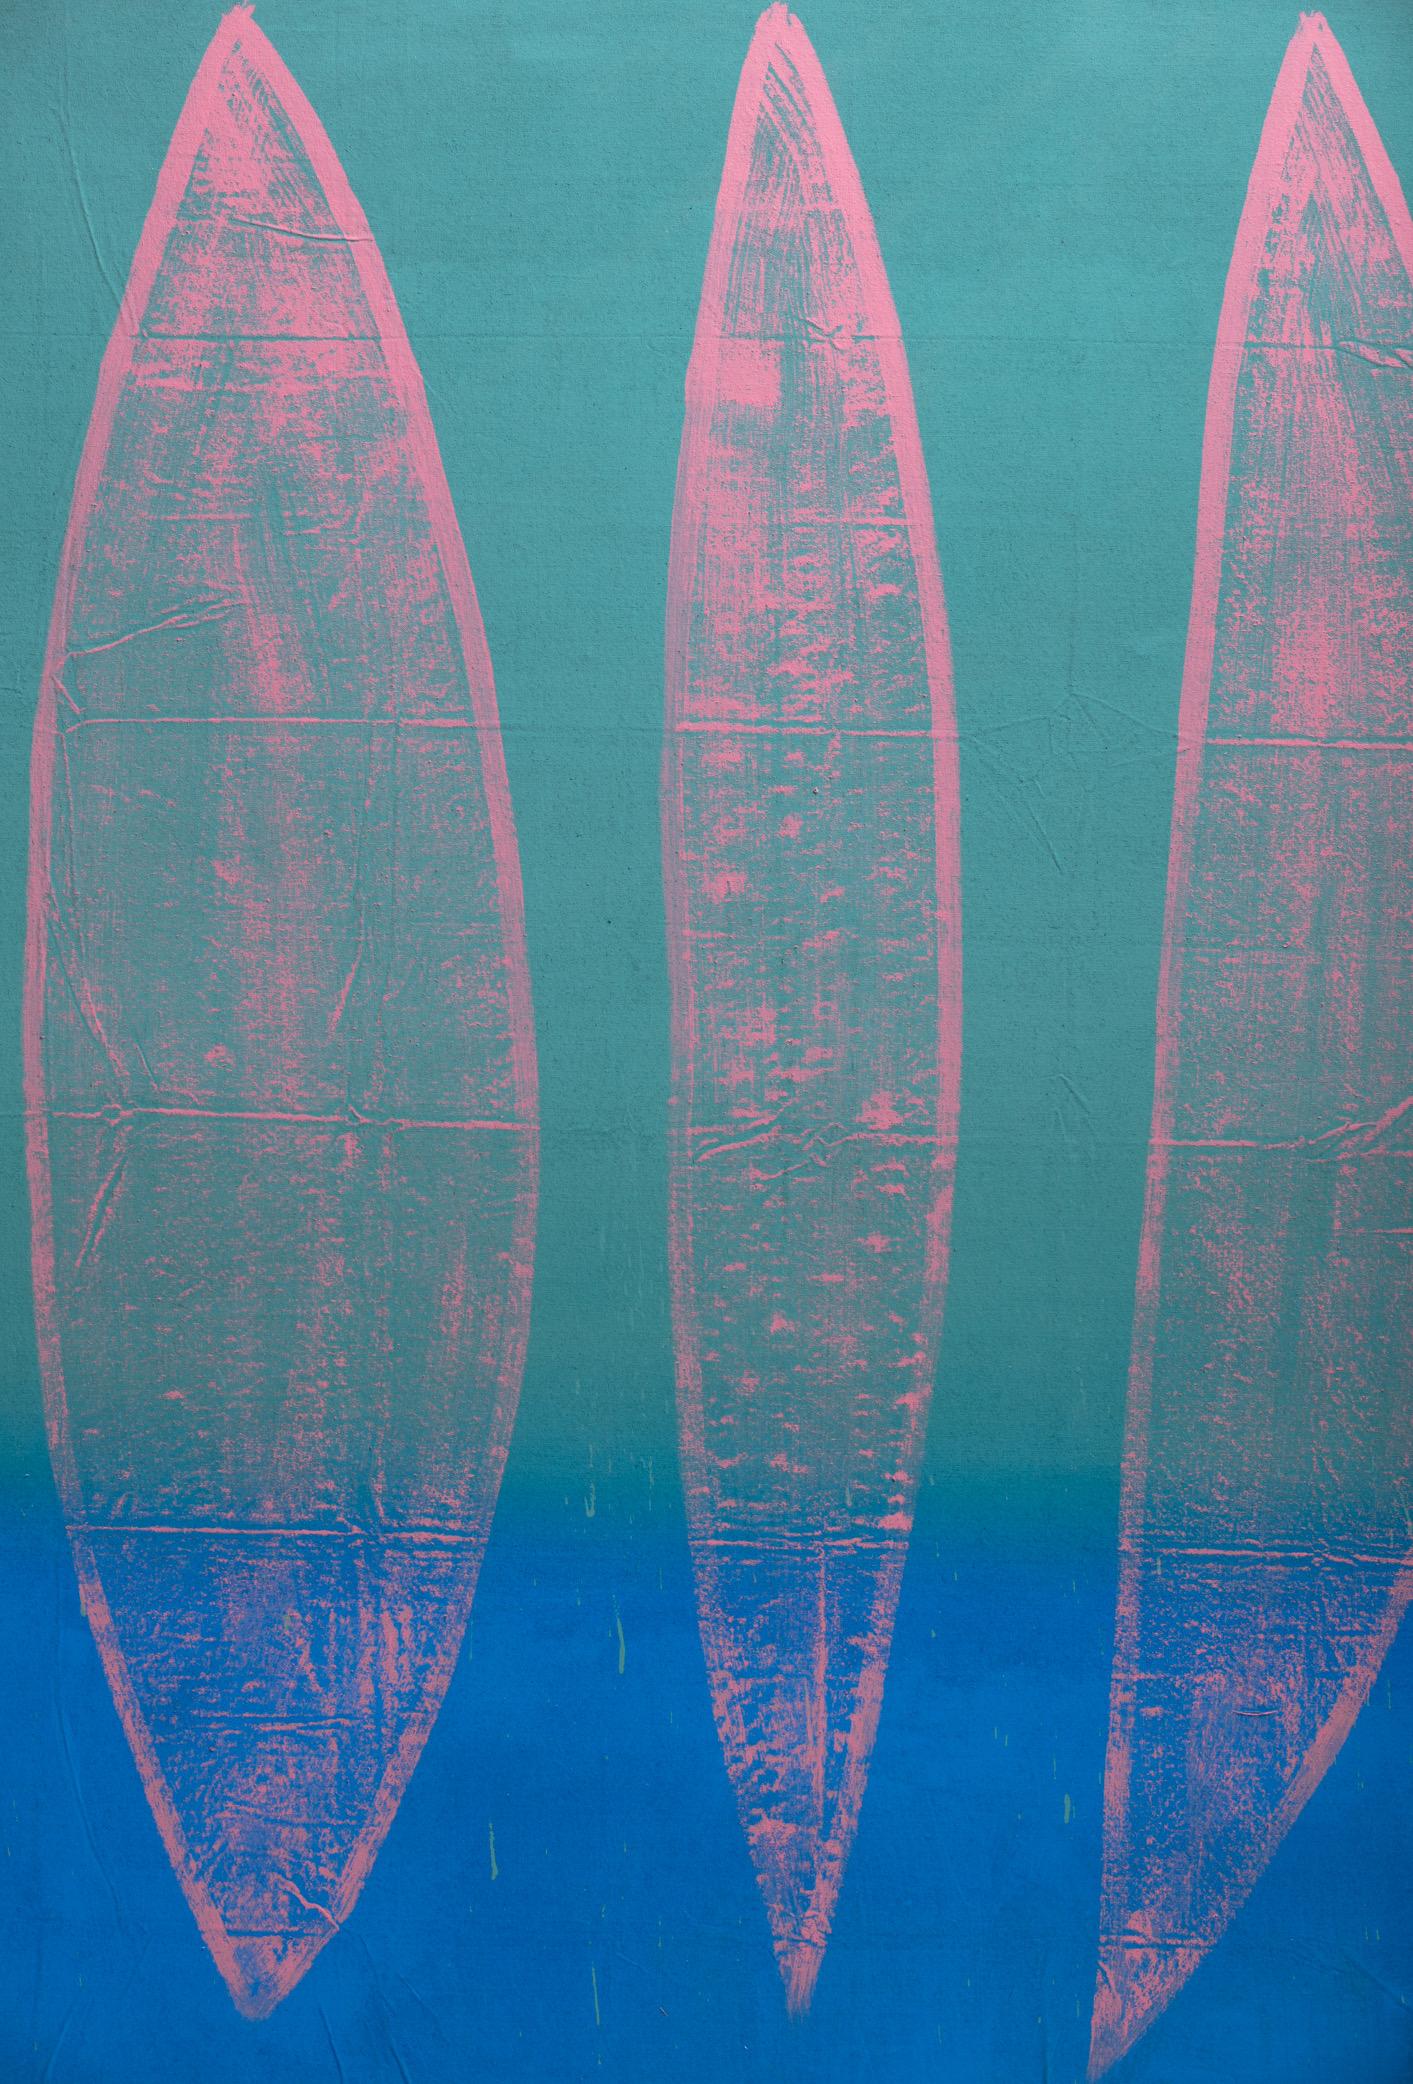 Christopher Ruess, peinture à grande échelle, environnement spatial, montée du bleu, polymère encapsulé et acrylique sur toile. Artiste né en Pennsylvanie, Chris Ruess a ensuite étudié à la Memphis Academy of Arts, au Memphis College of Art et à la